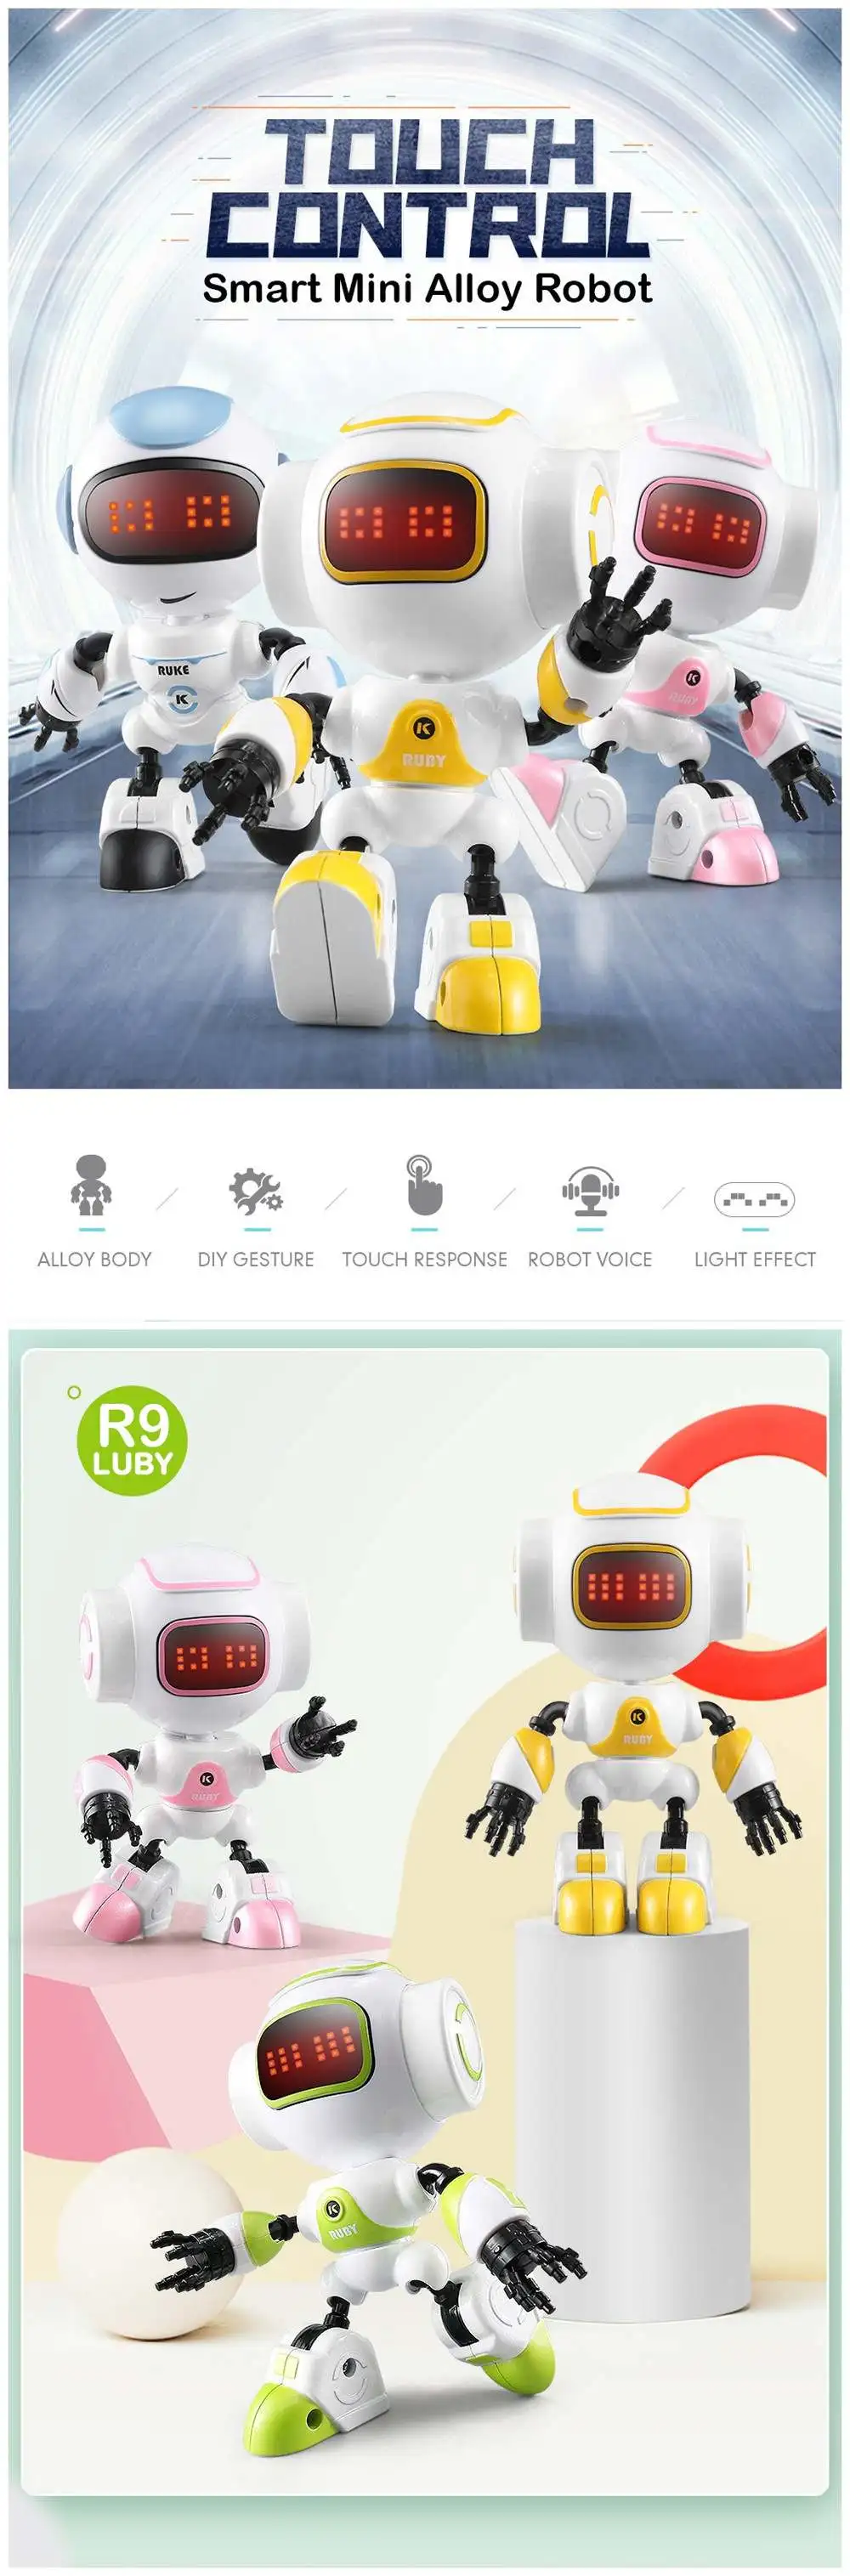 JJRC R9 Рубин сенсорное управление DIY жесты мини умный озвученный сплав робот игрушка RC робот для детей мальчик и девочка подарки на день рождения зеленый